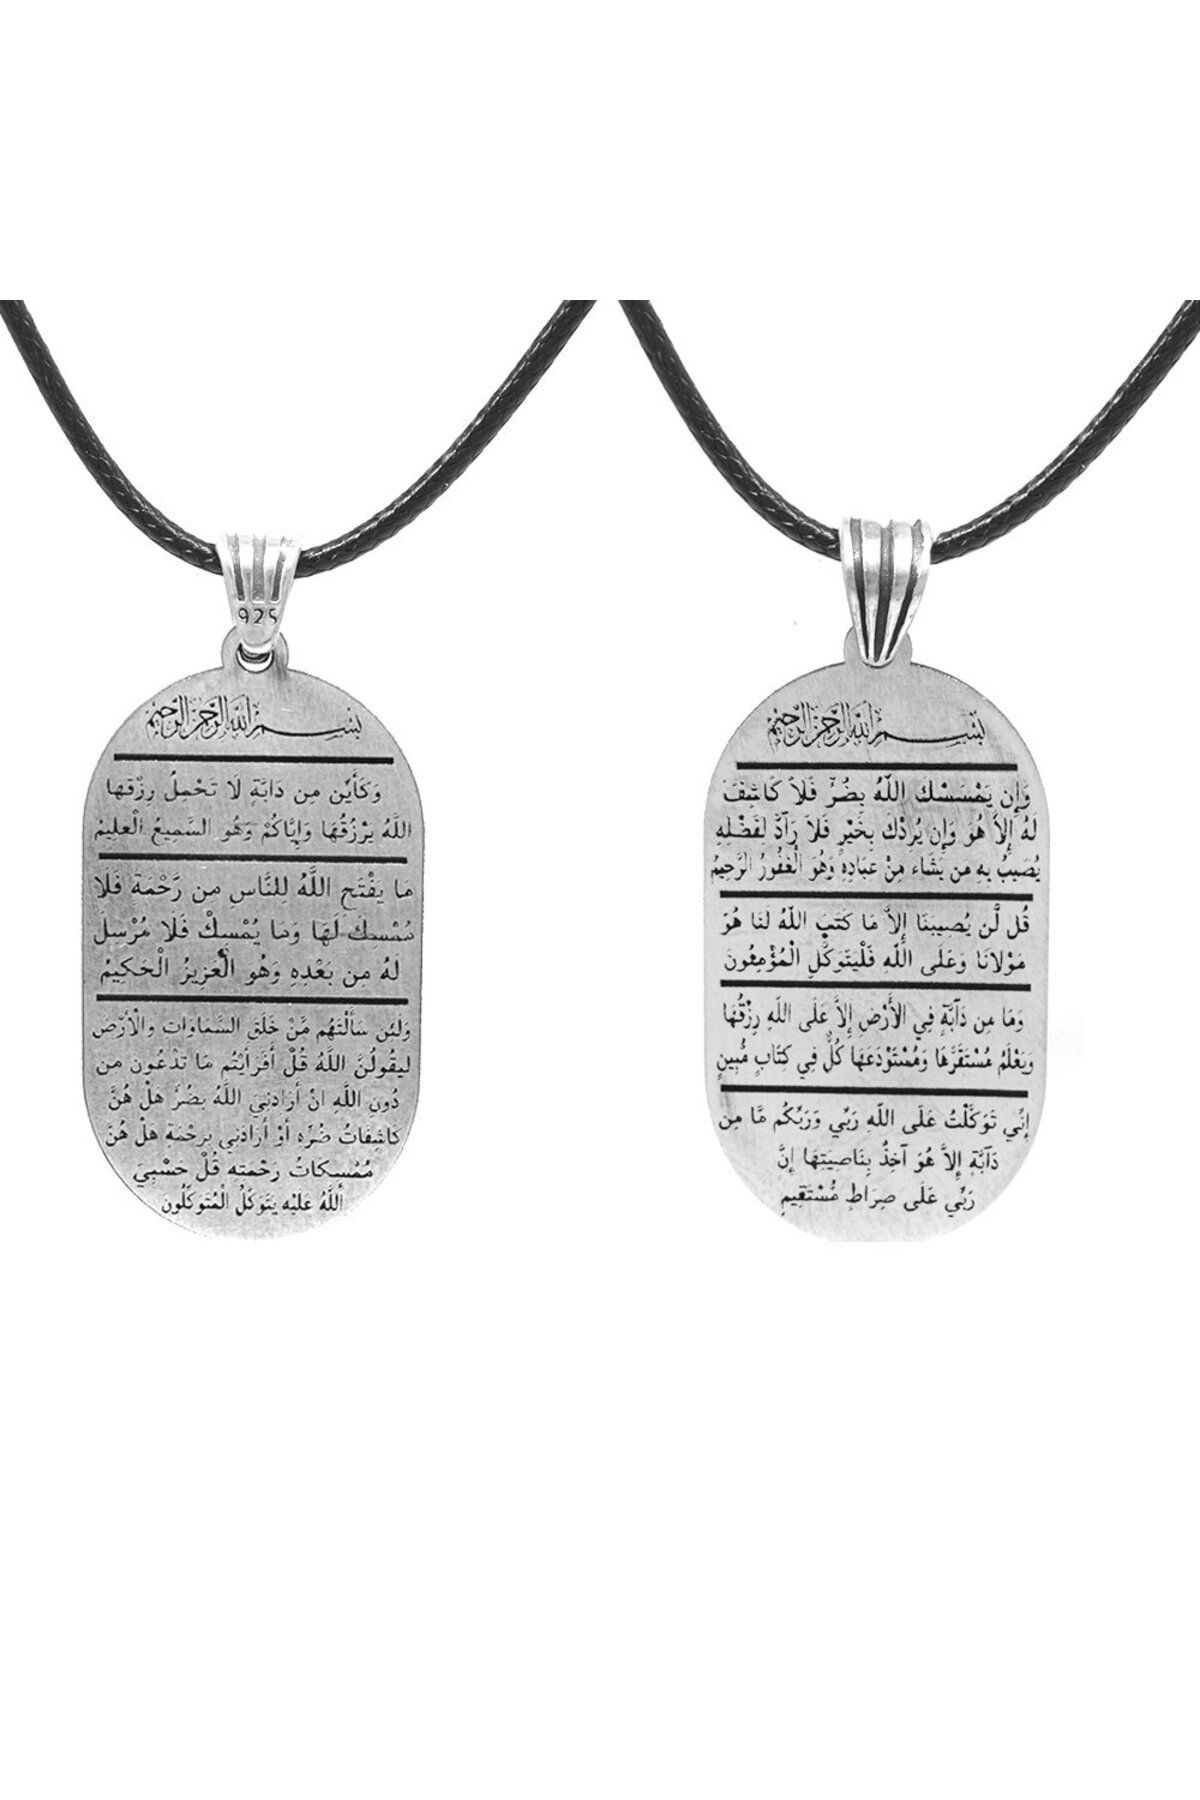 Genel Markalar Üzeri Arapça "Darda ve Çaresiz Durumlarda" 7 Ayet Yazılı İp Zincirli 925 Ayar Gümüş Madalyon